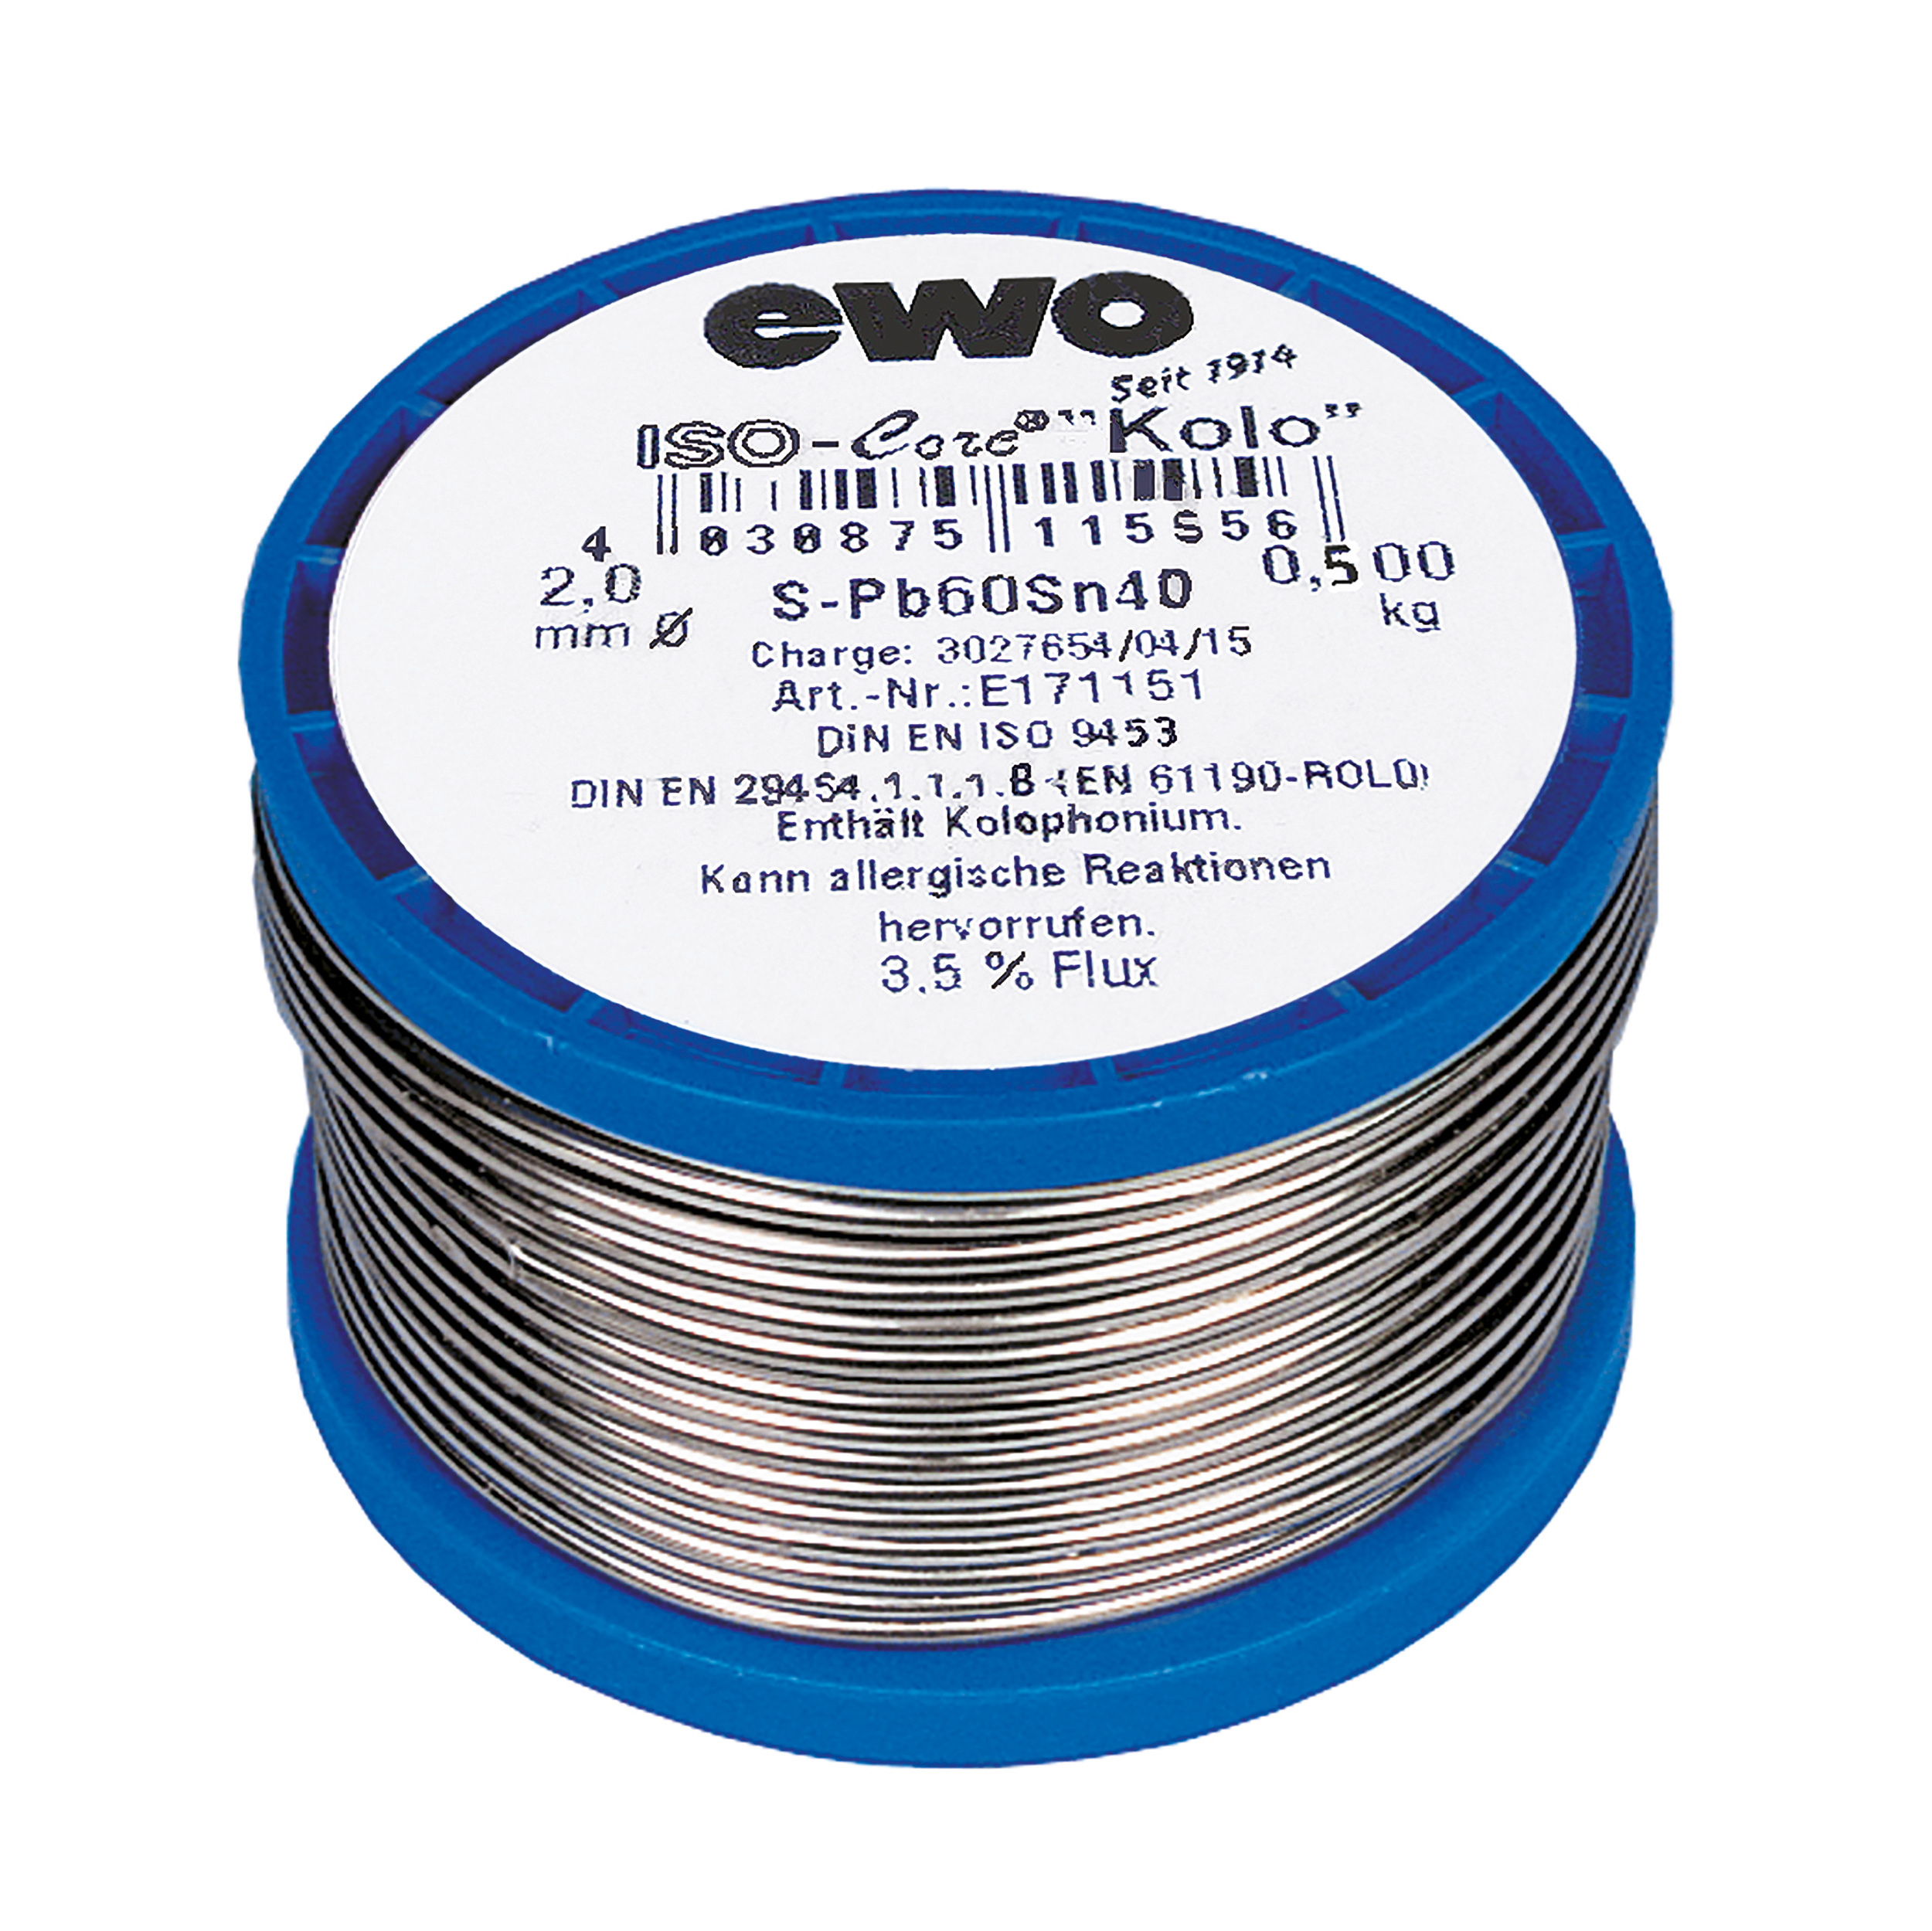 soldering wire, DIN EN 29454, 1,5mm, F-SW31 - coil size: 0,1 kg